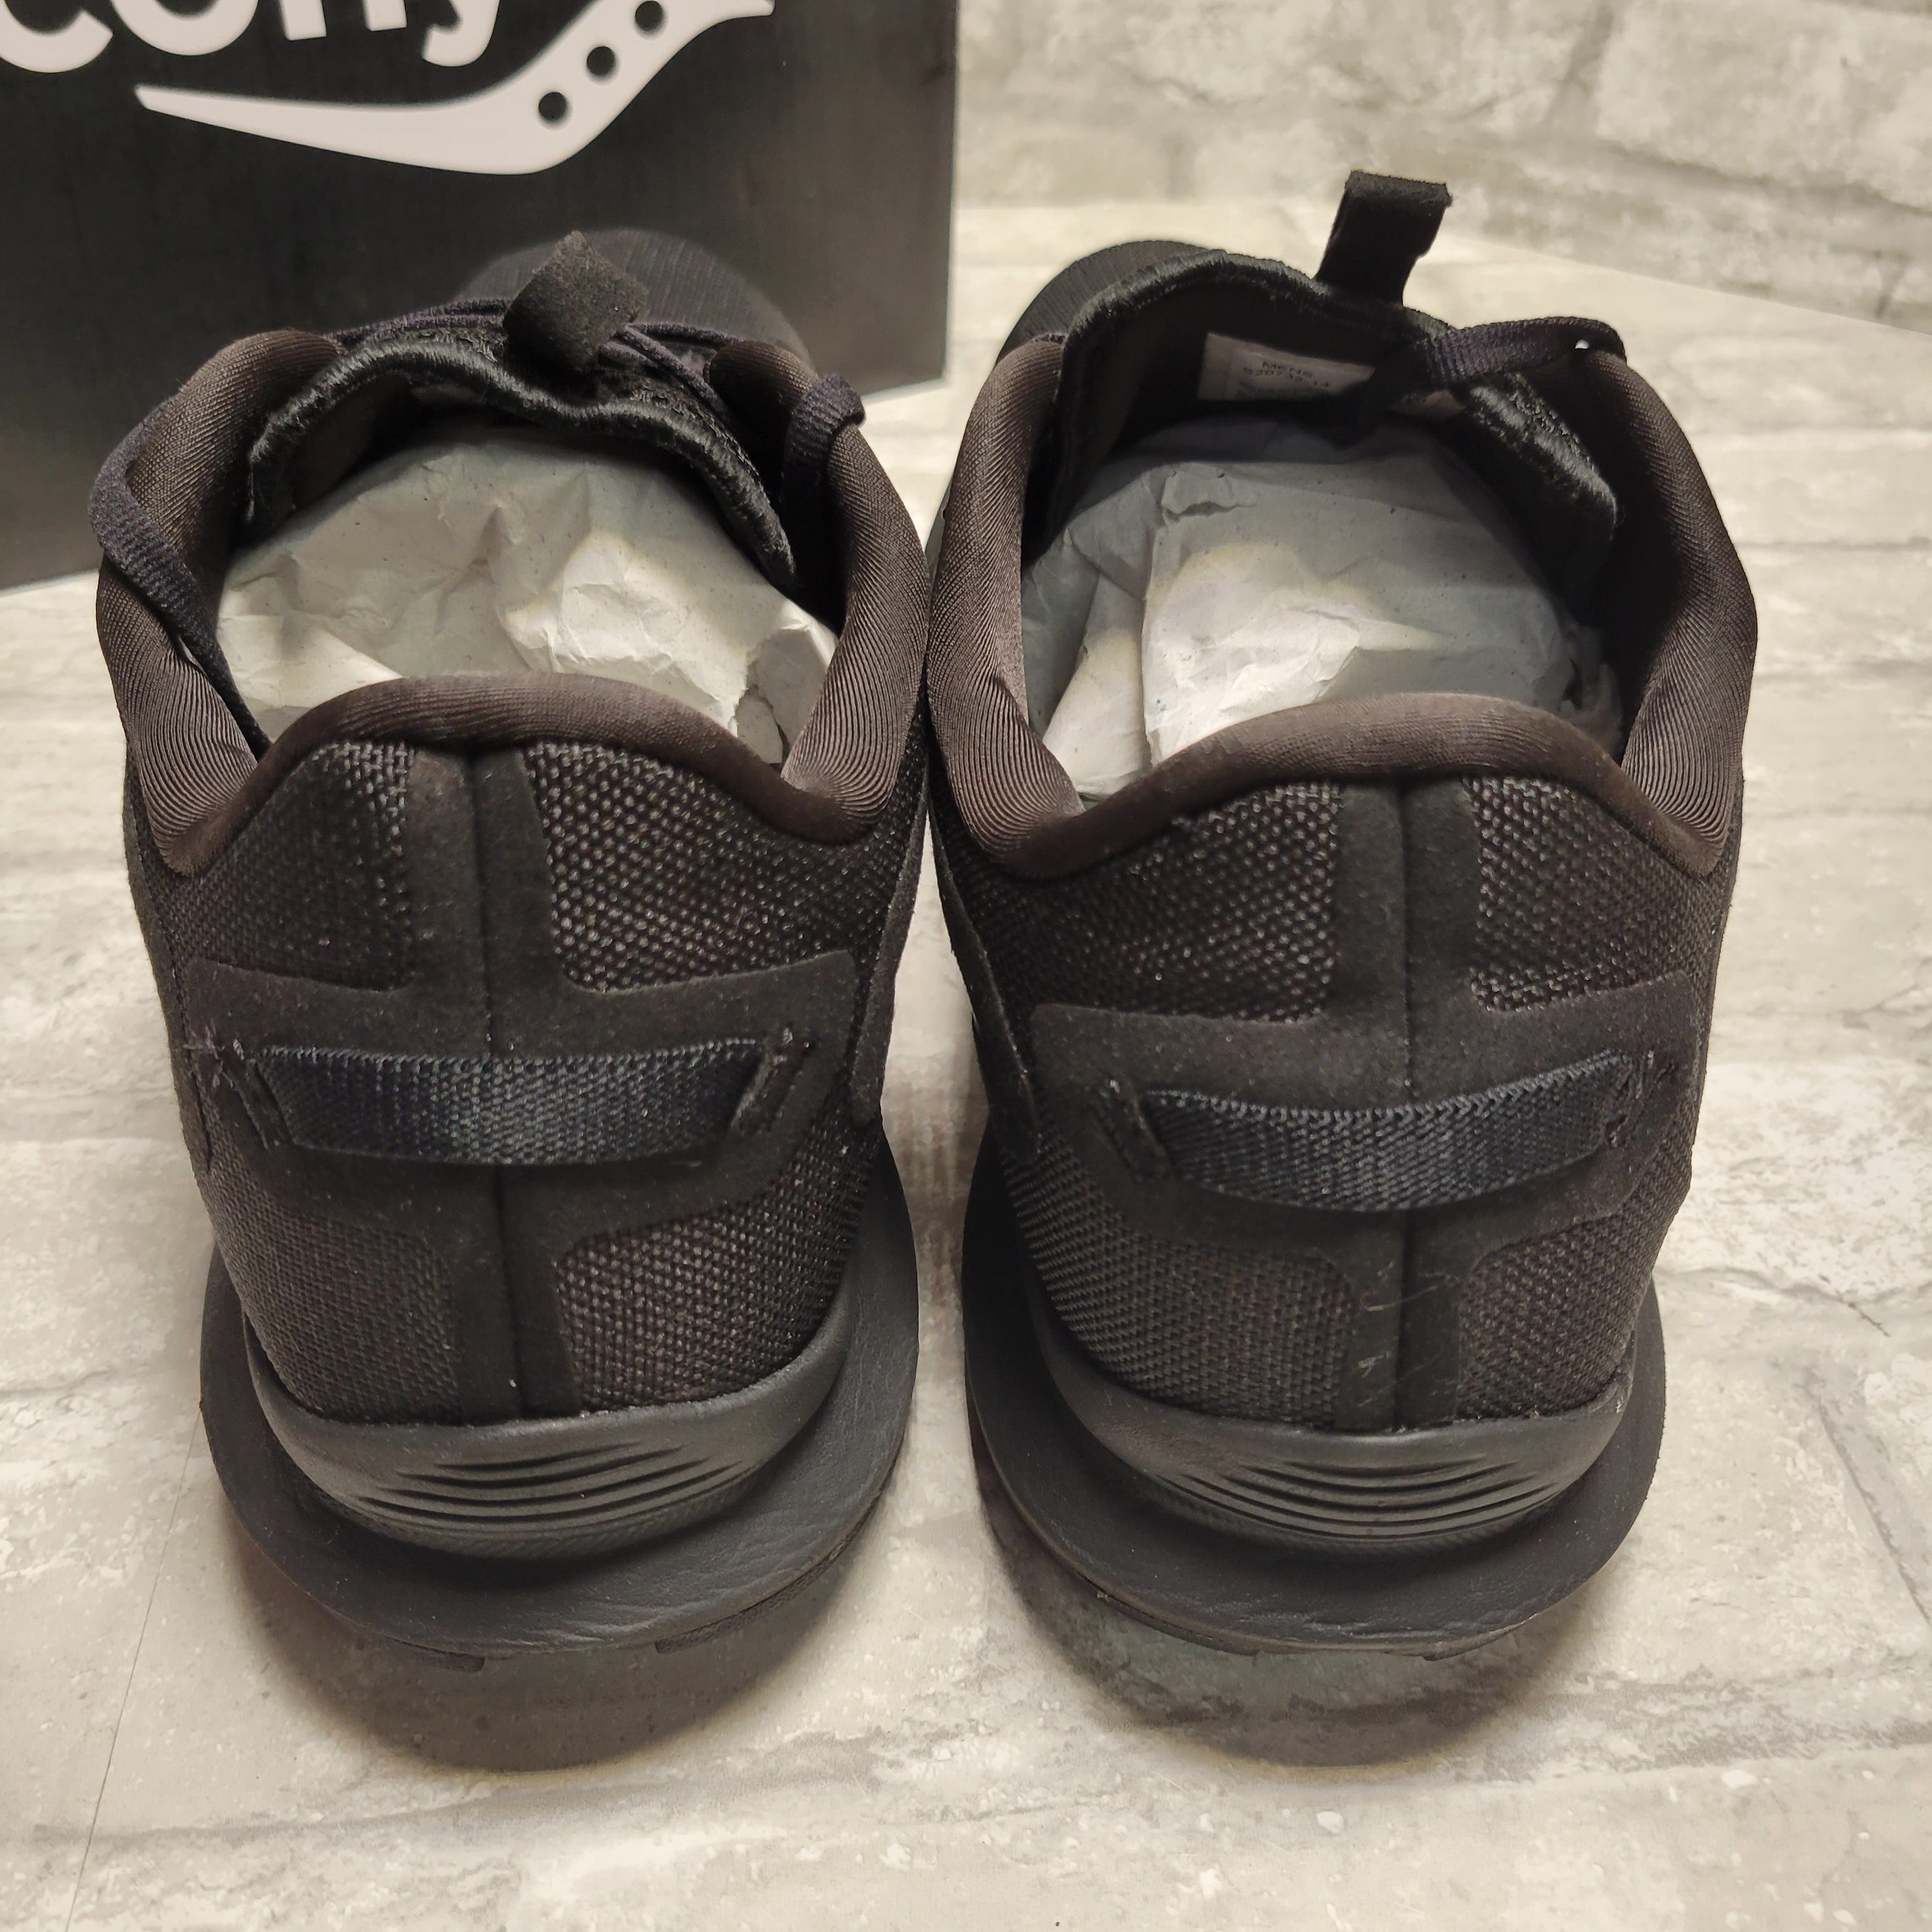 Saucony Axon 2 Men's Running Shoes S20732-14, Black 11 (8073591881966)